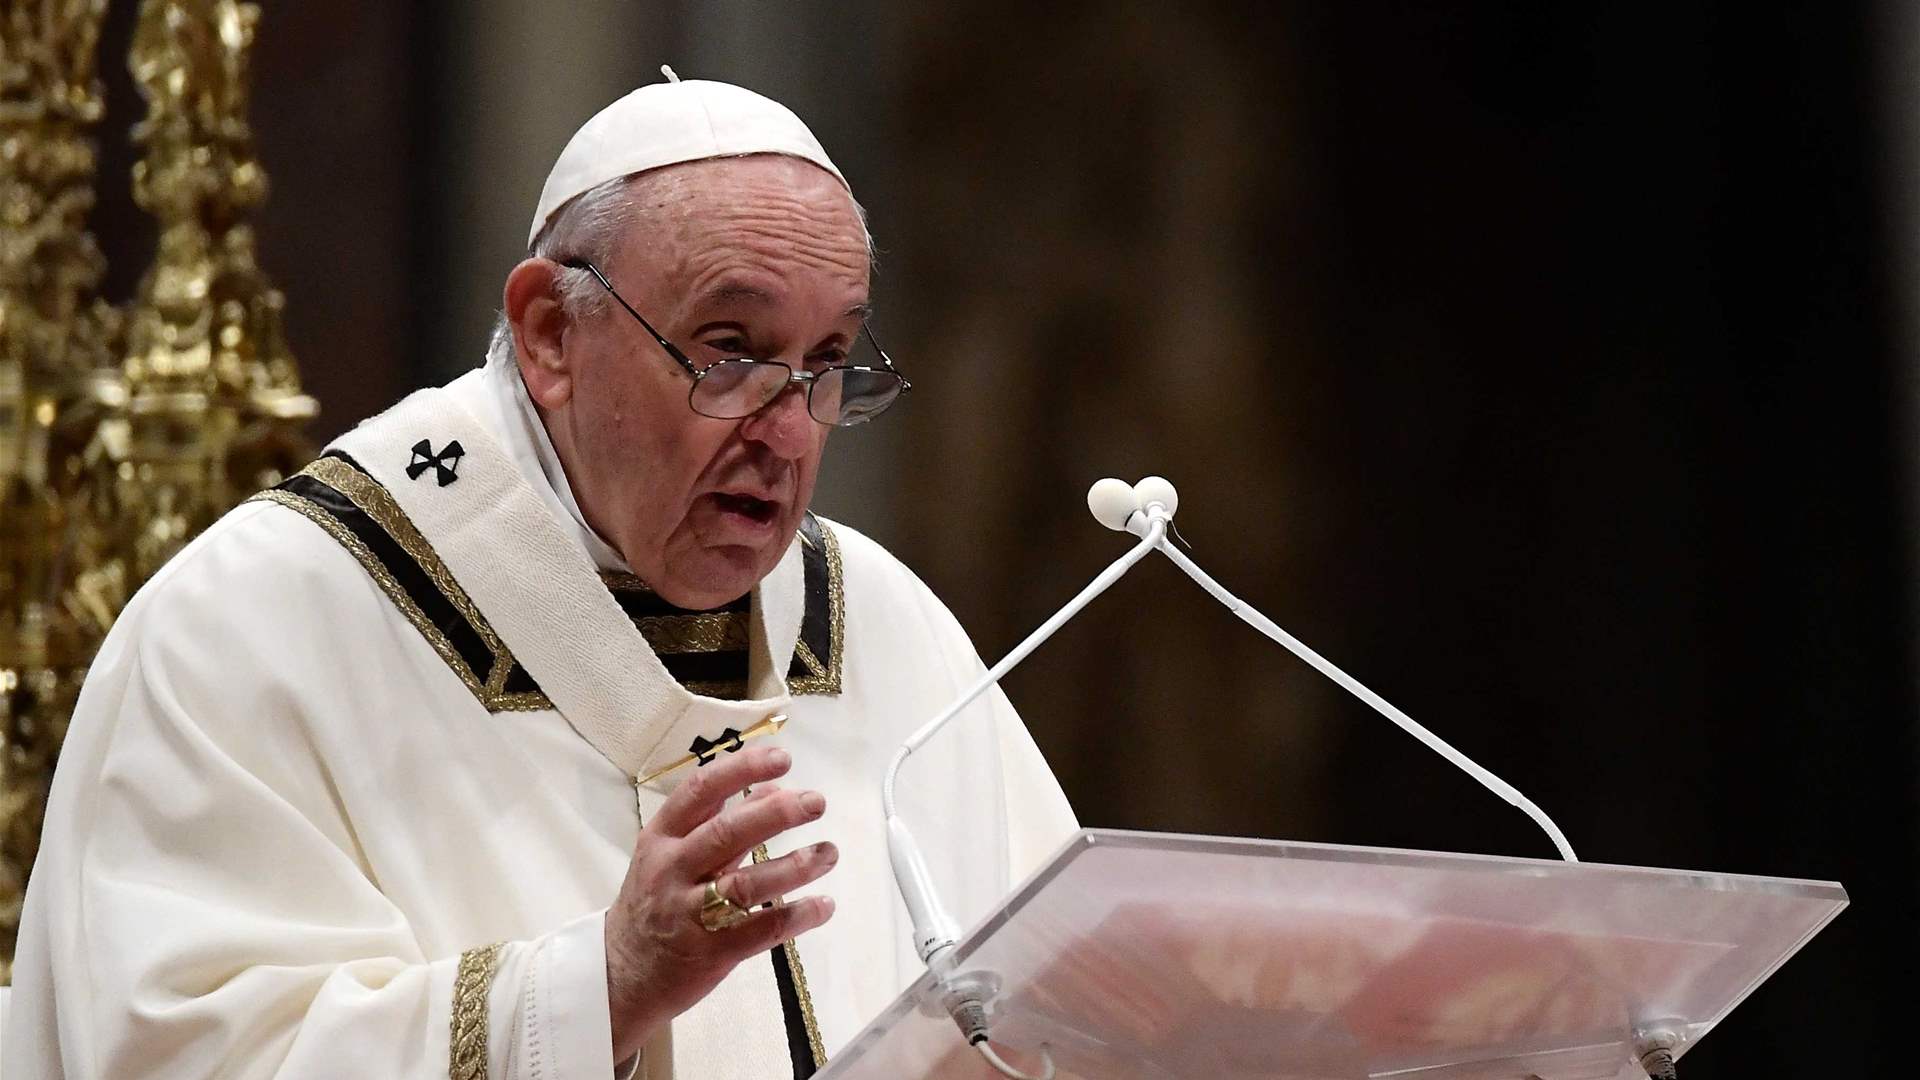 البابا فرنسيس يلغي رحلته إلى دبي للمشاركة في مؤتمر كوب 28